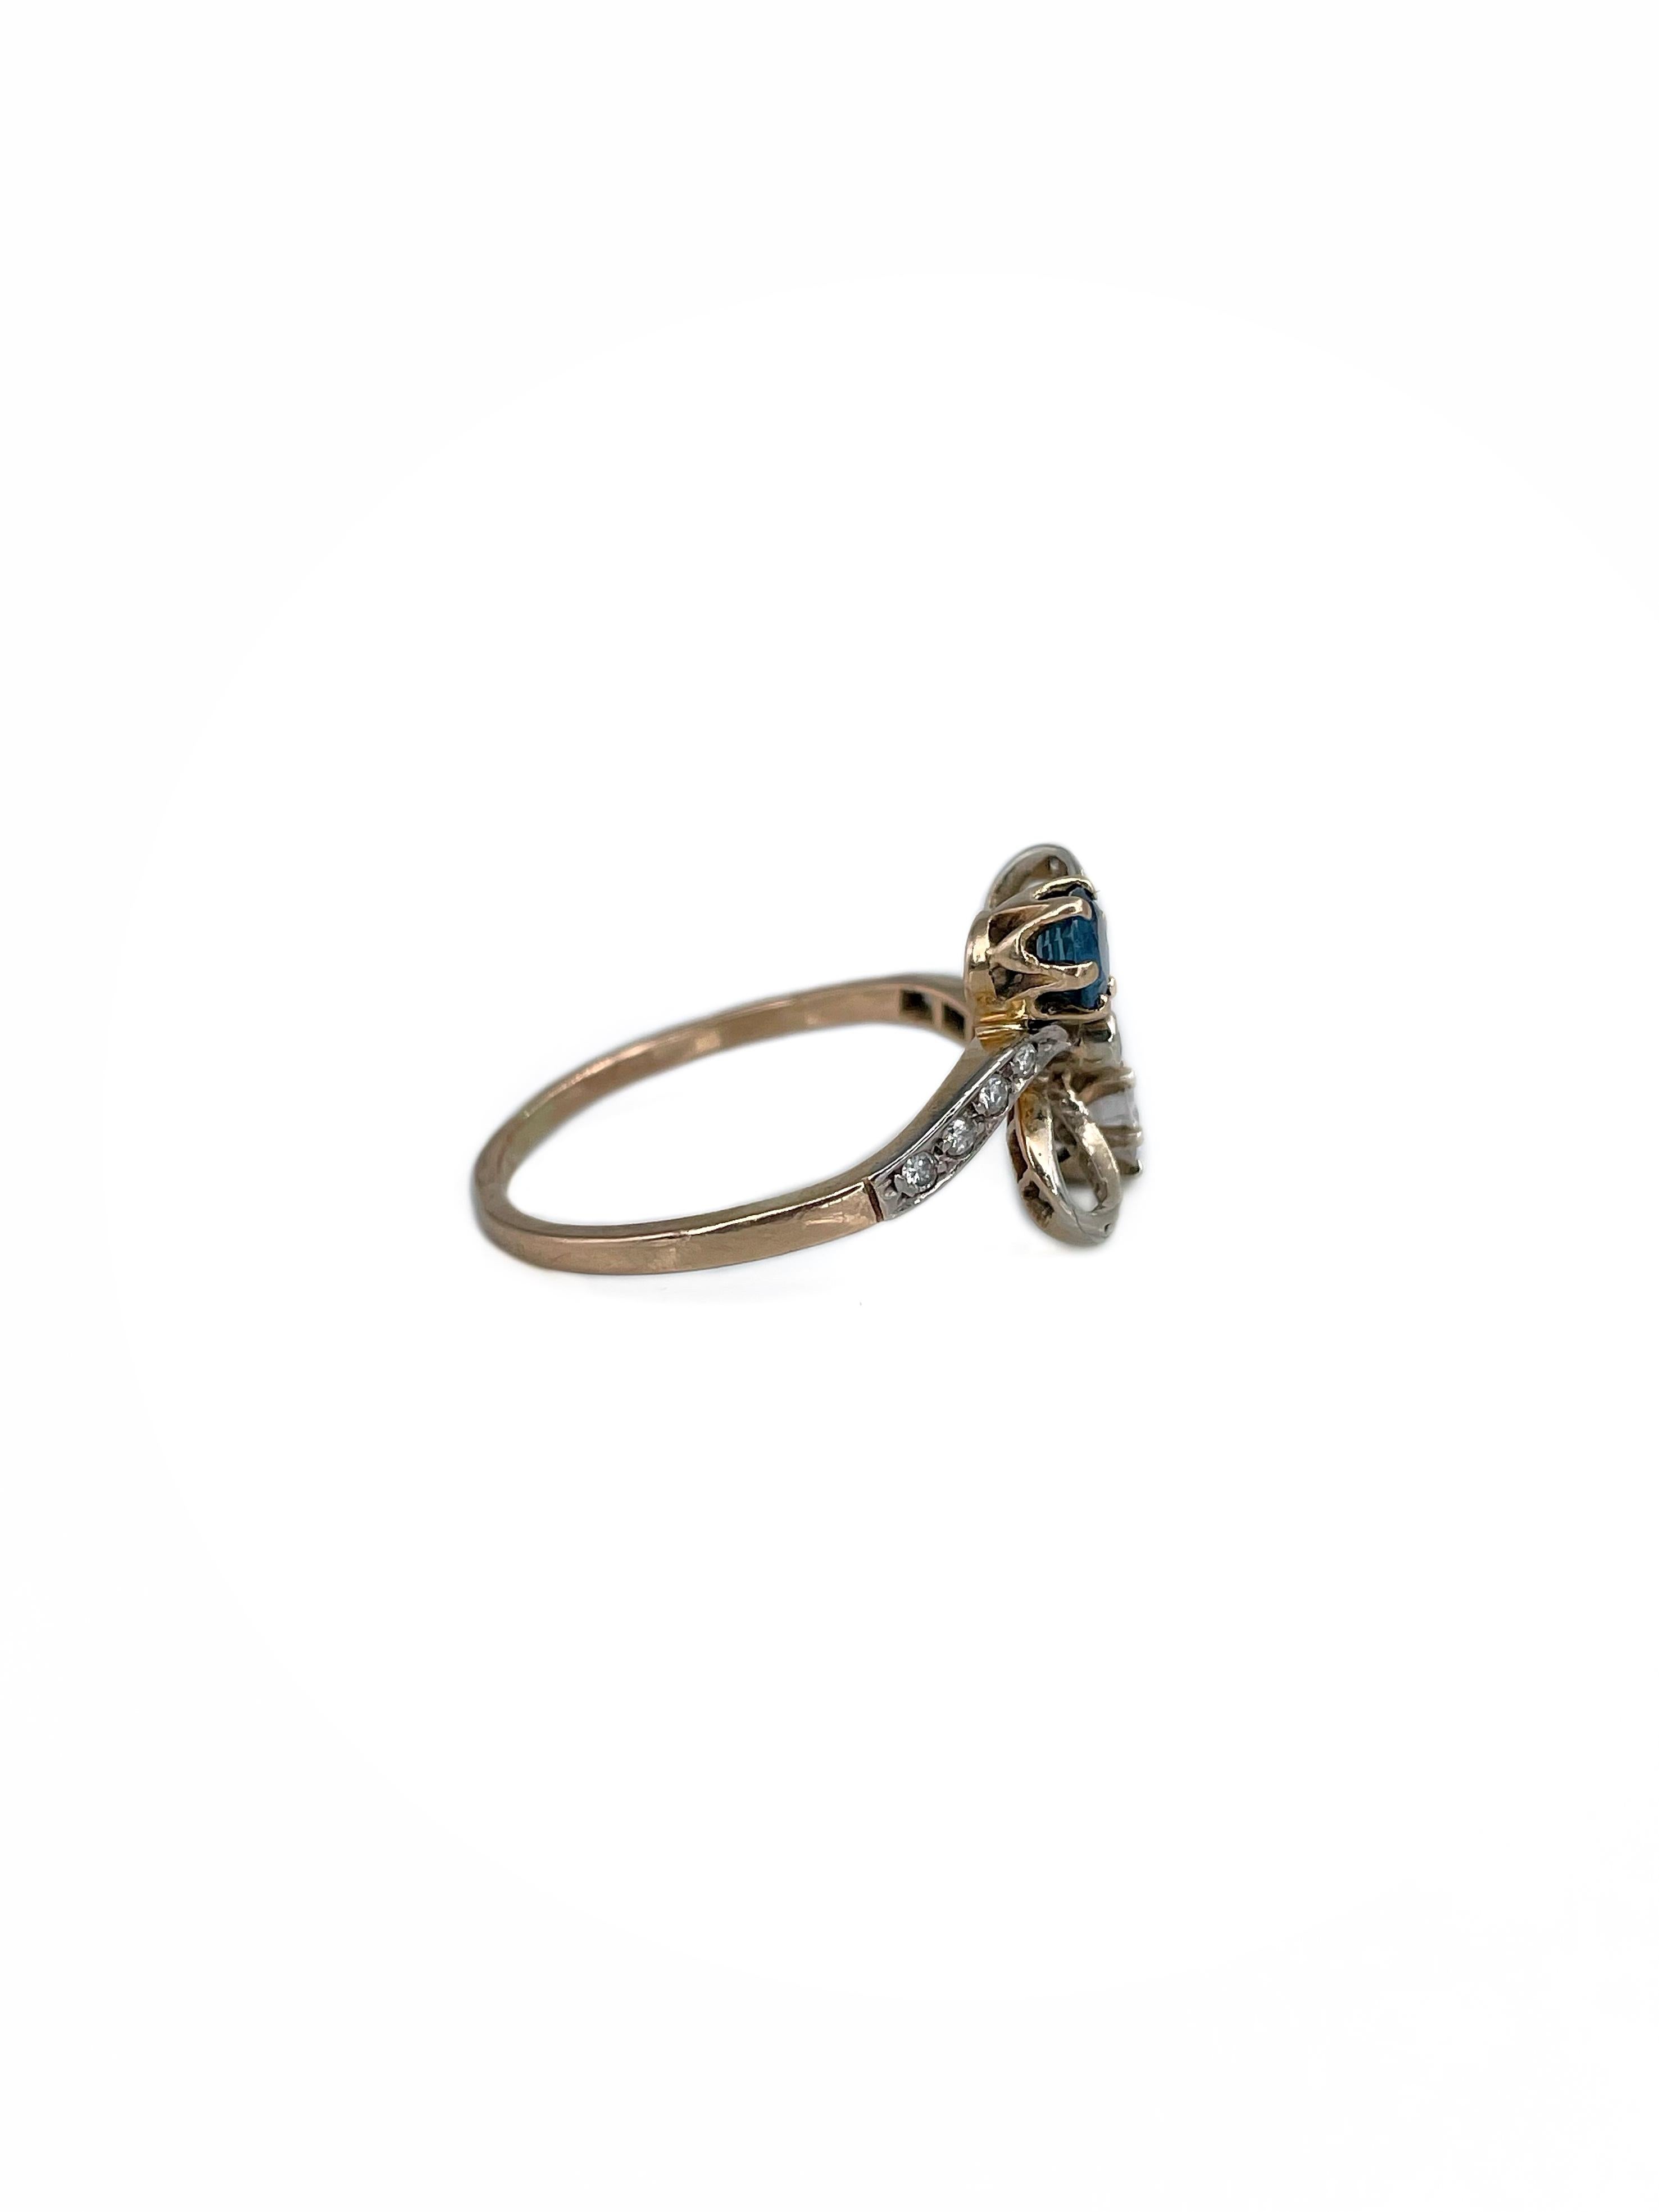 Belle Époque Belle Epoque 18 Karat Gold Sapphire Diamond Bow Design Engagement Ring